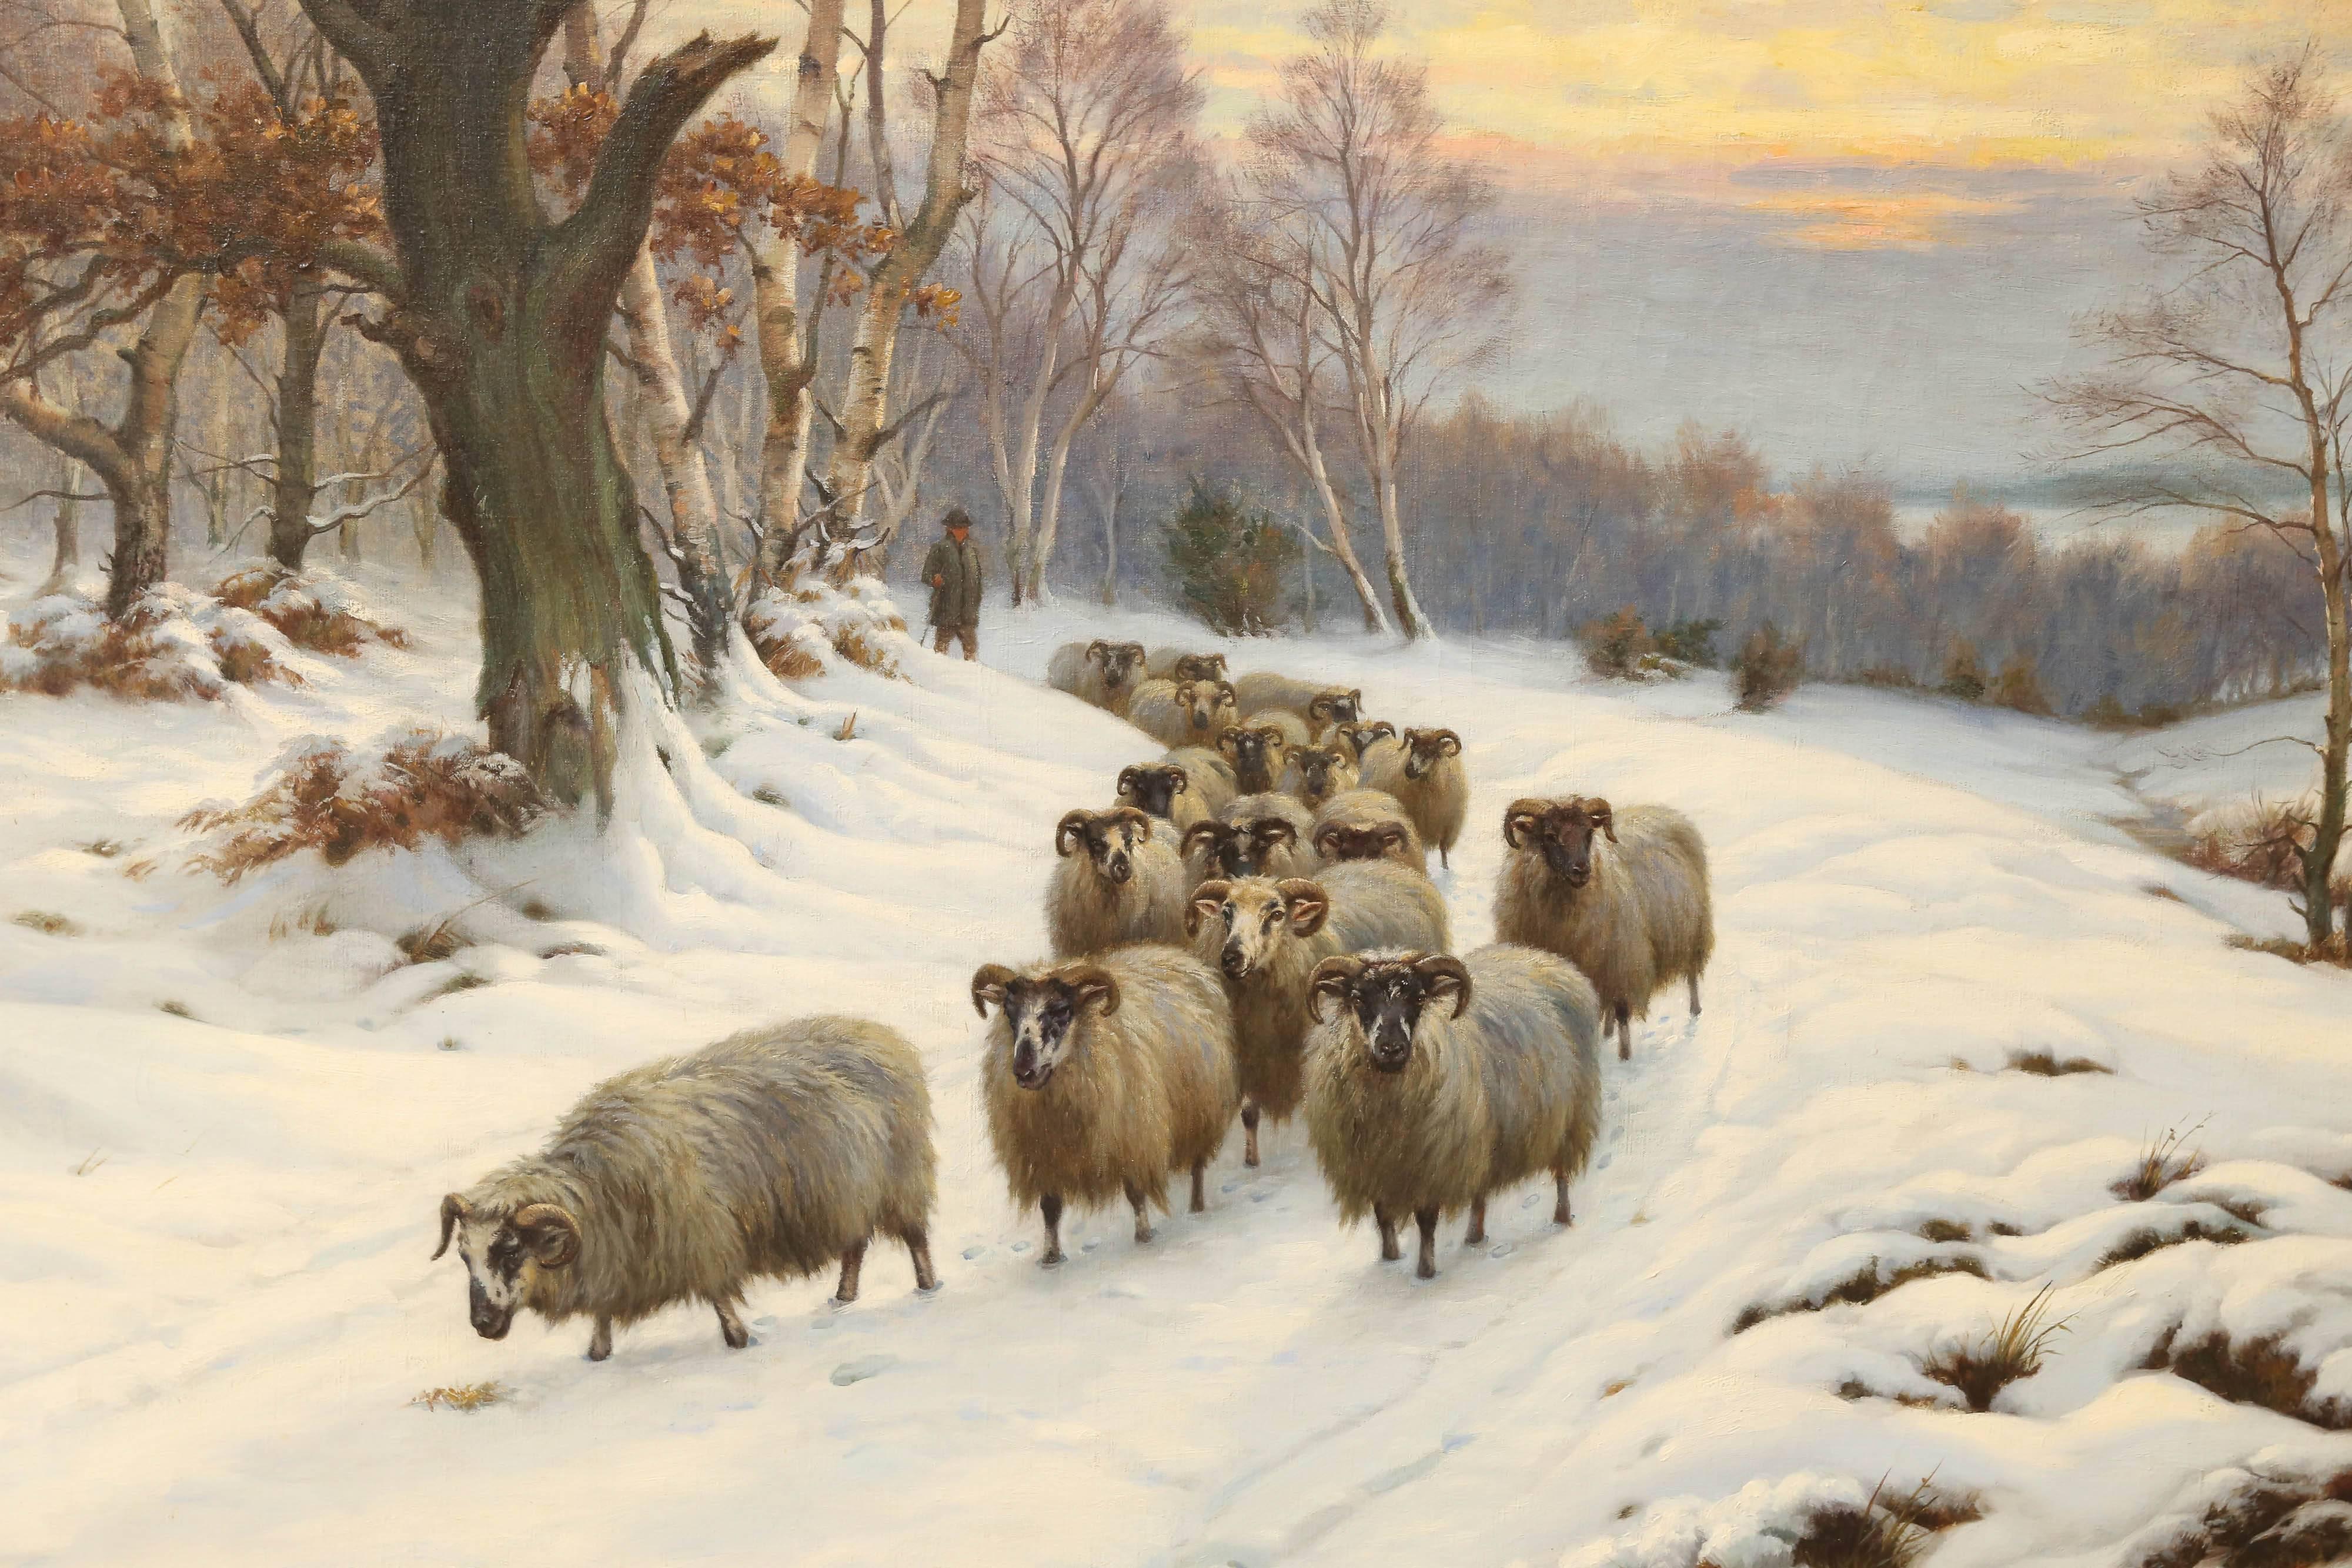 Wright Barker (1864-1941) war ein britischer Maler und Mitglied der Royal British Academy (R.B.A.). Er ist bekannt als John Wright Barker. Er malte Genrebilder, ländliche und sportliche Szenen, insbesondere Hunde, Jagd, Pferde, Hochlandrinder und